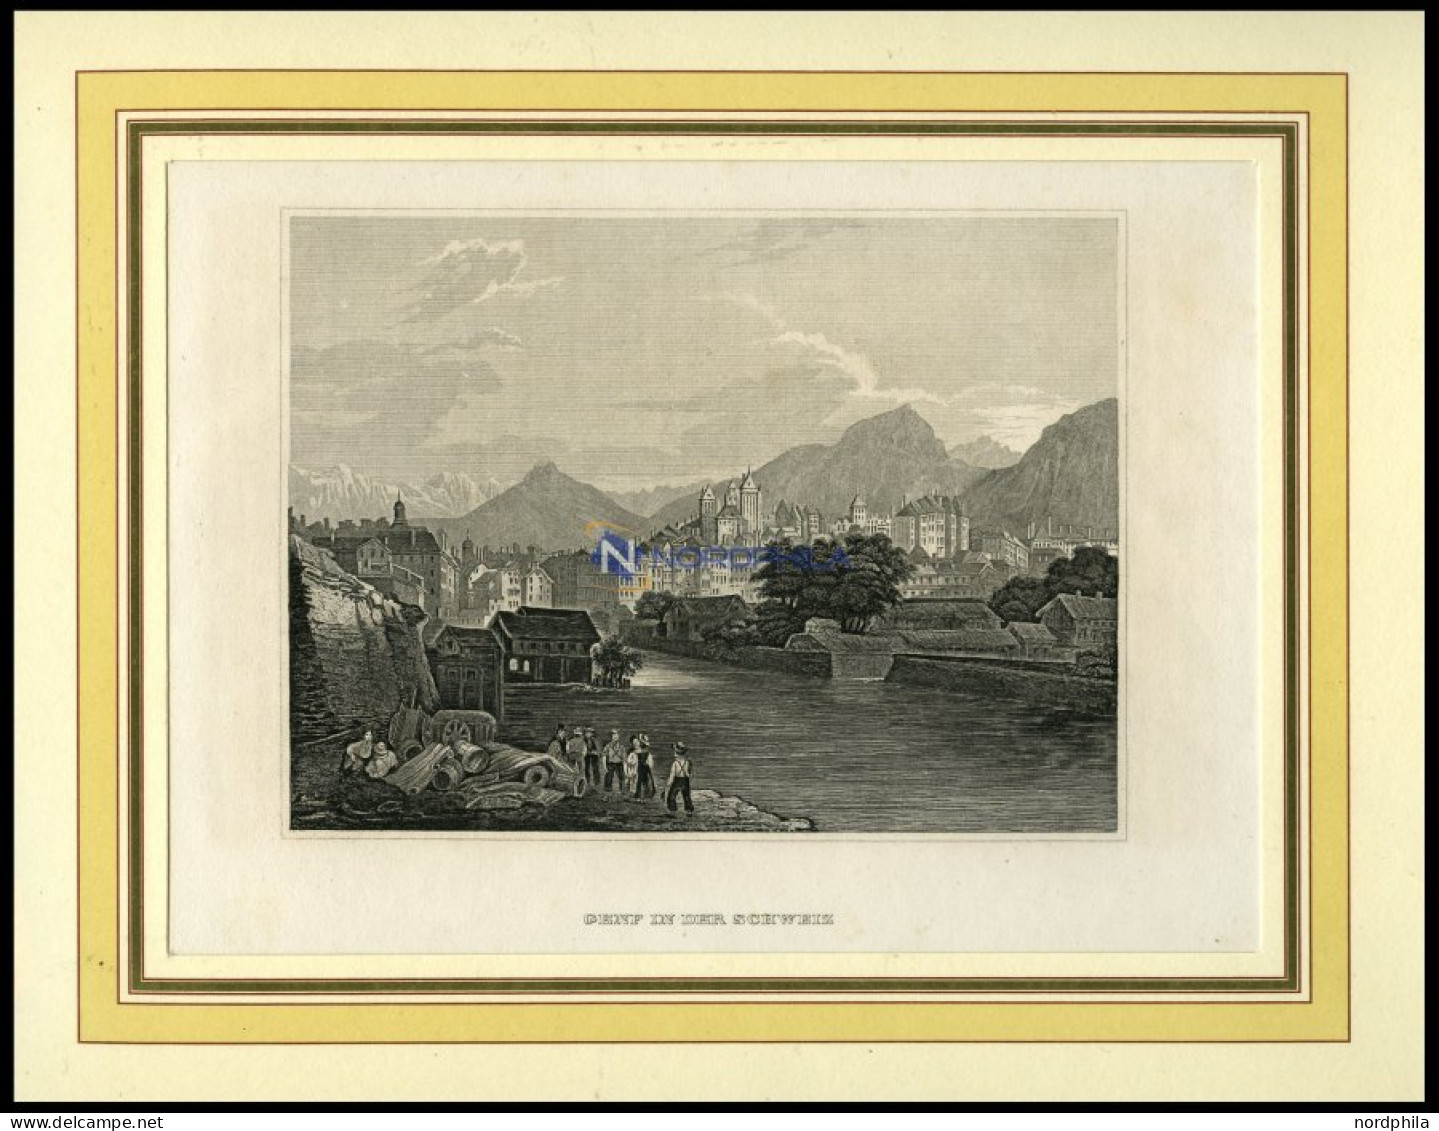 GENF, Gesamtansicht, Stahlstich Von B.I. Um 1860 - Litografia